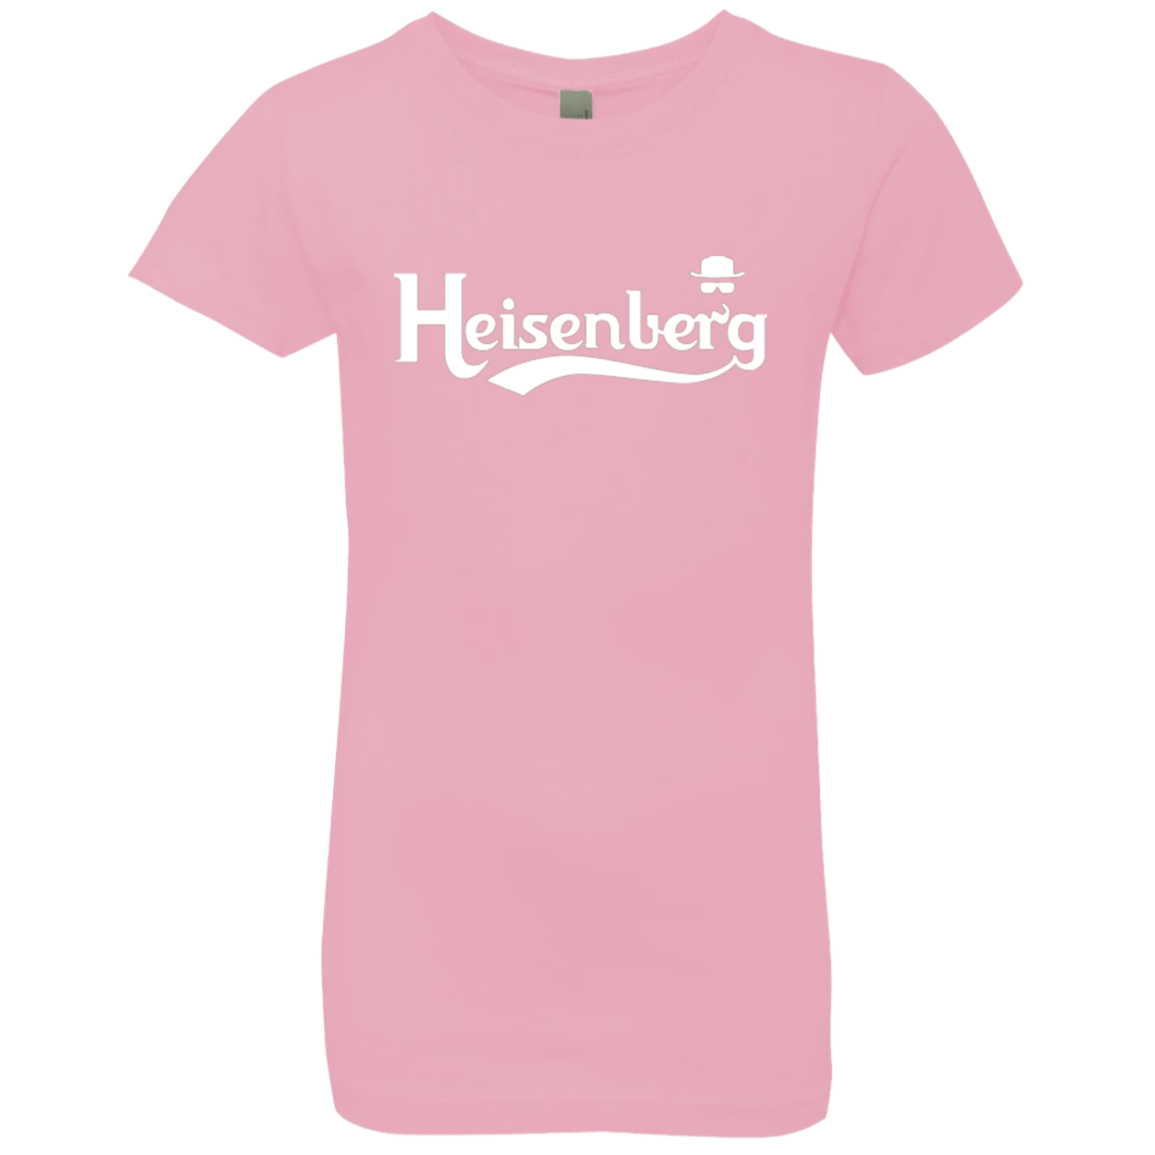 Heisenberg (1) Girls Premium T-Shirt